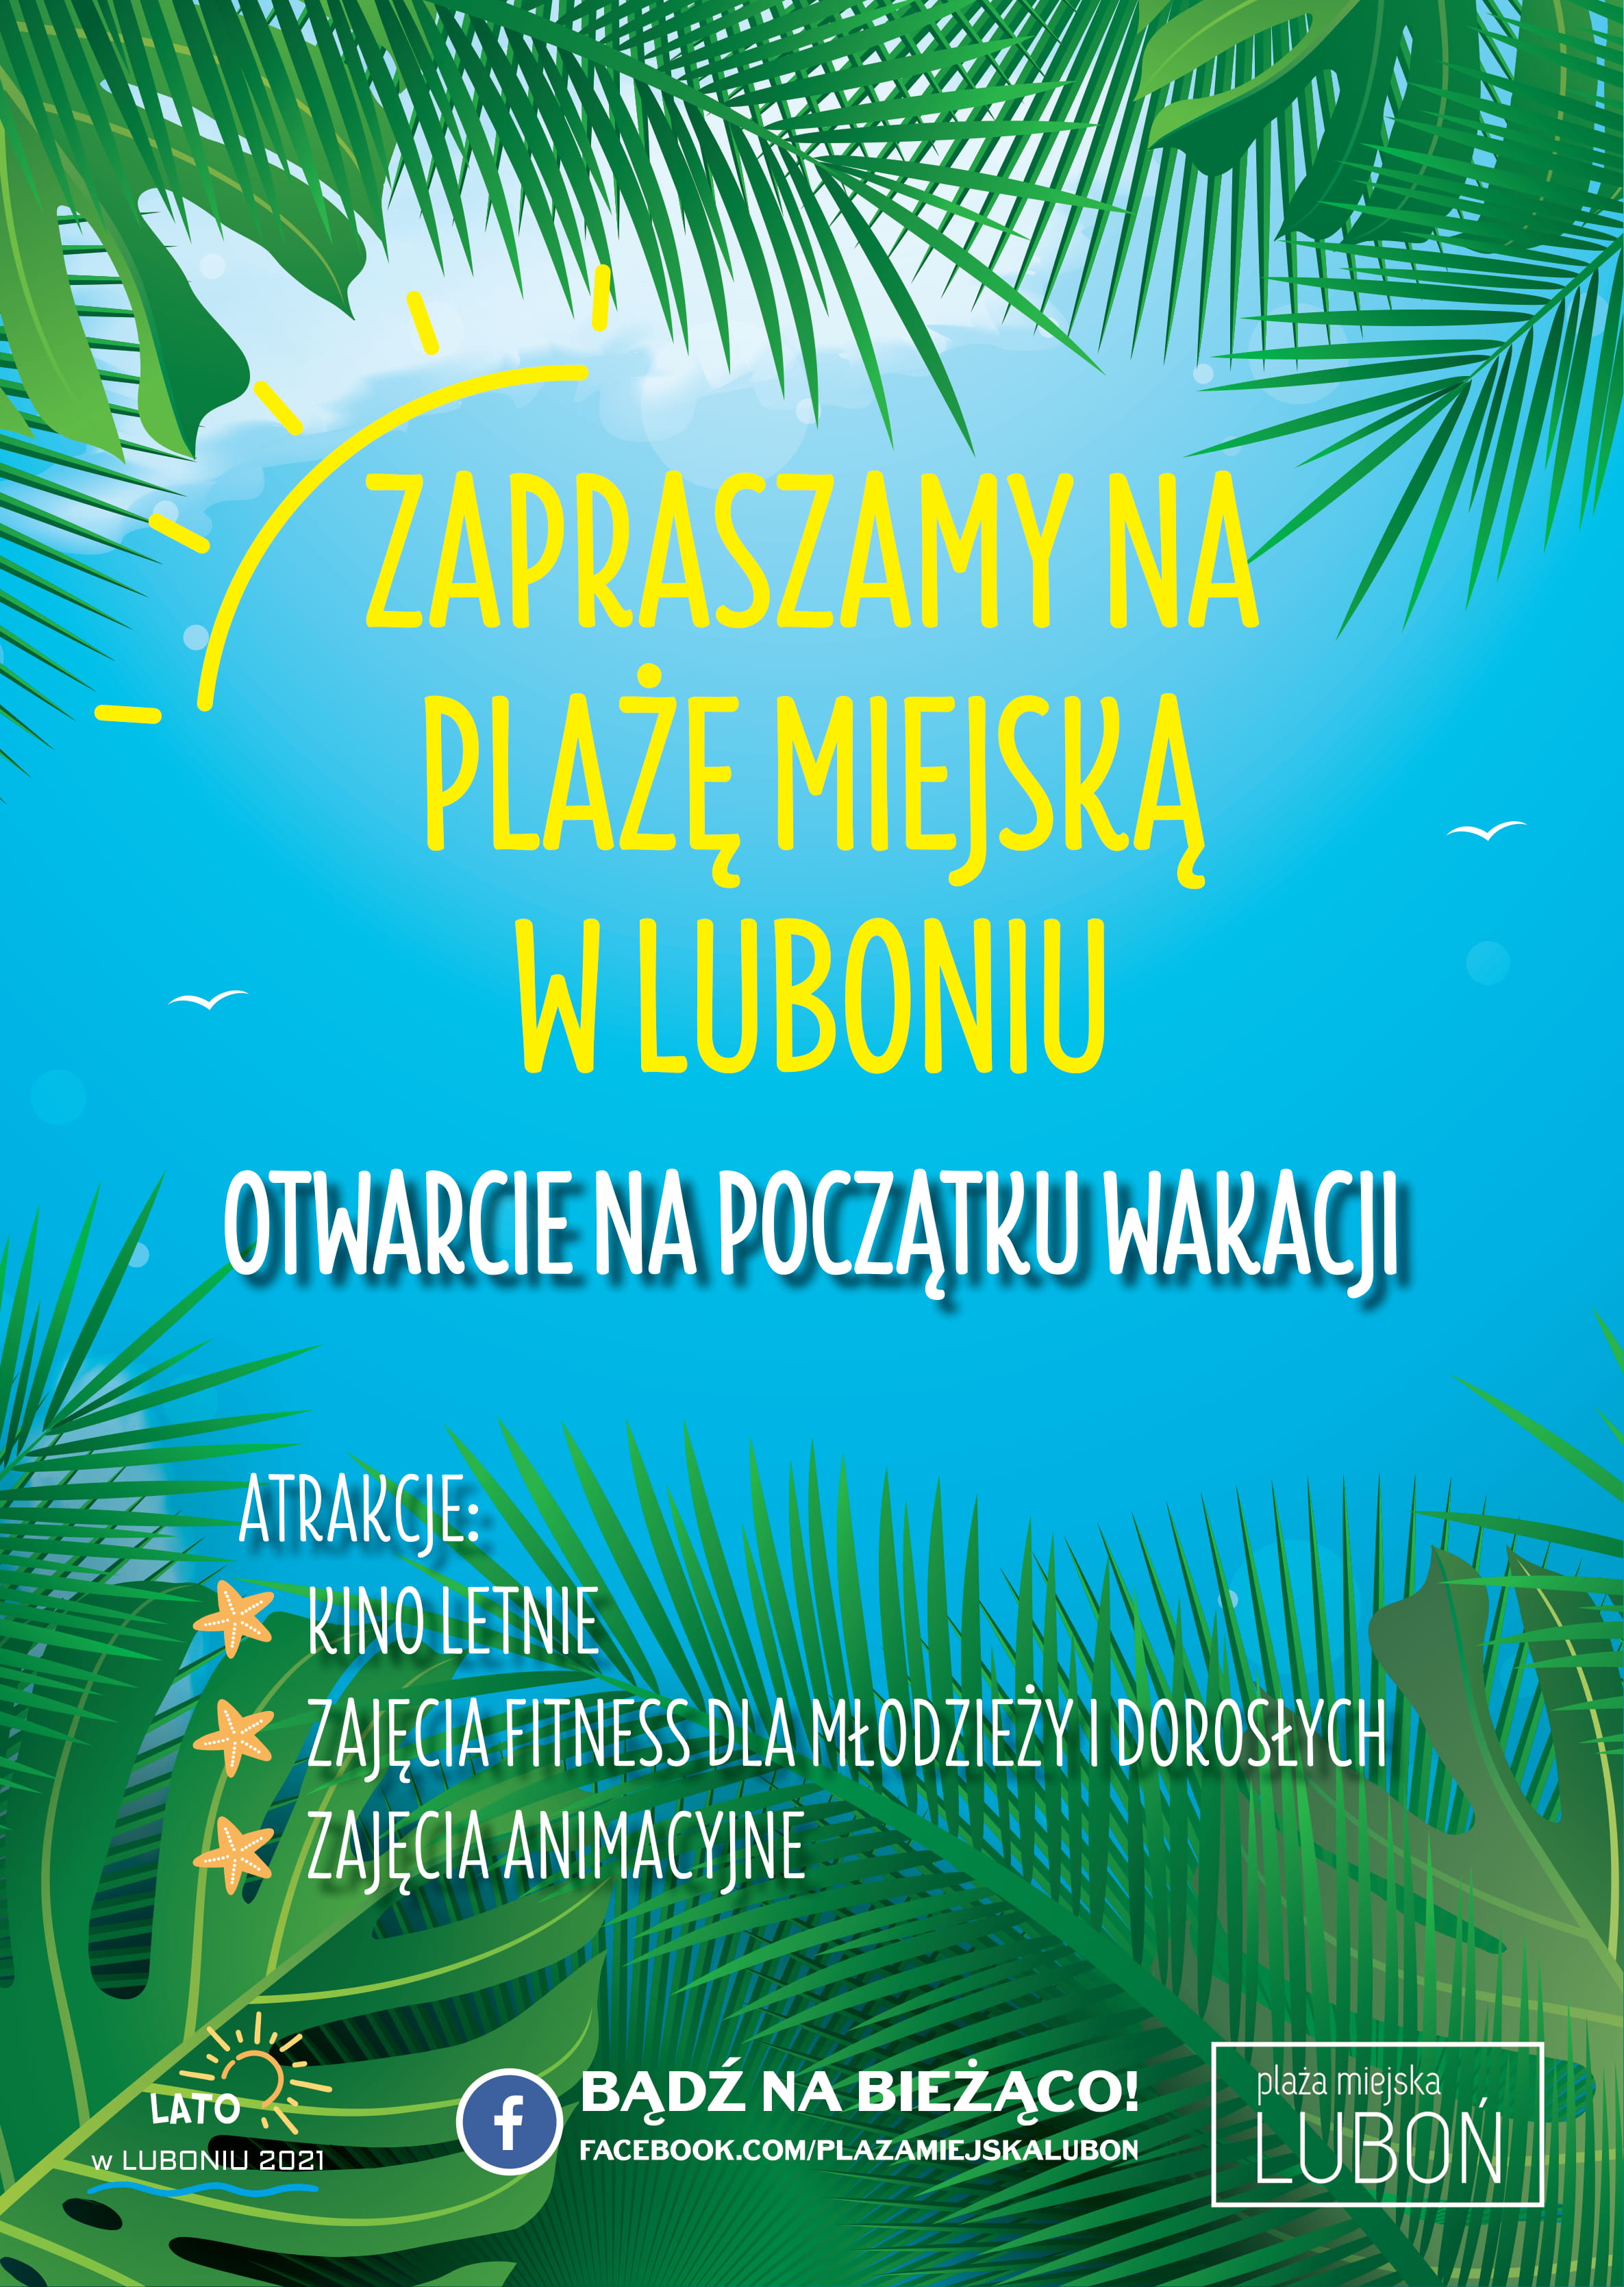 Plakat zachęcający do odwiedzenia Plaży Miejskiej w Luboniu